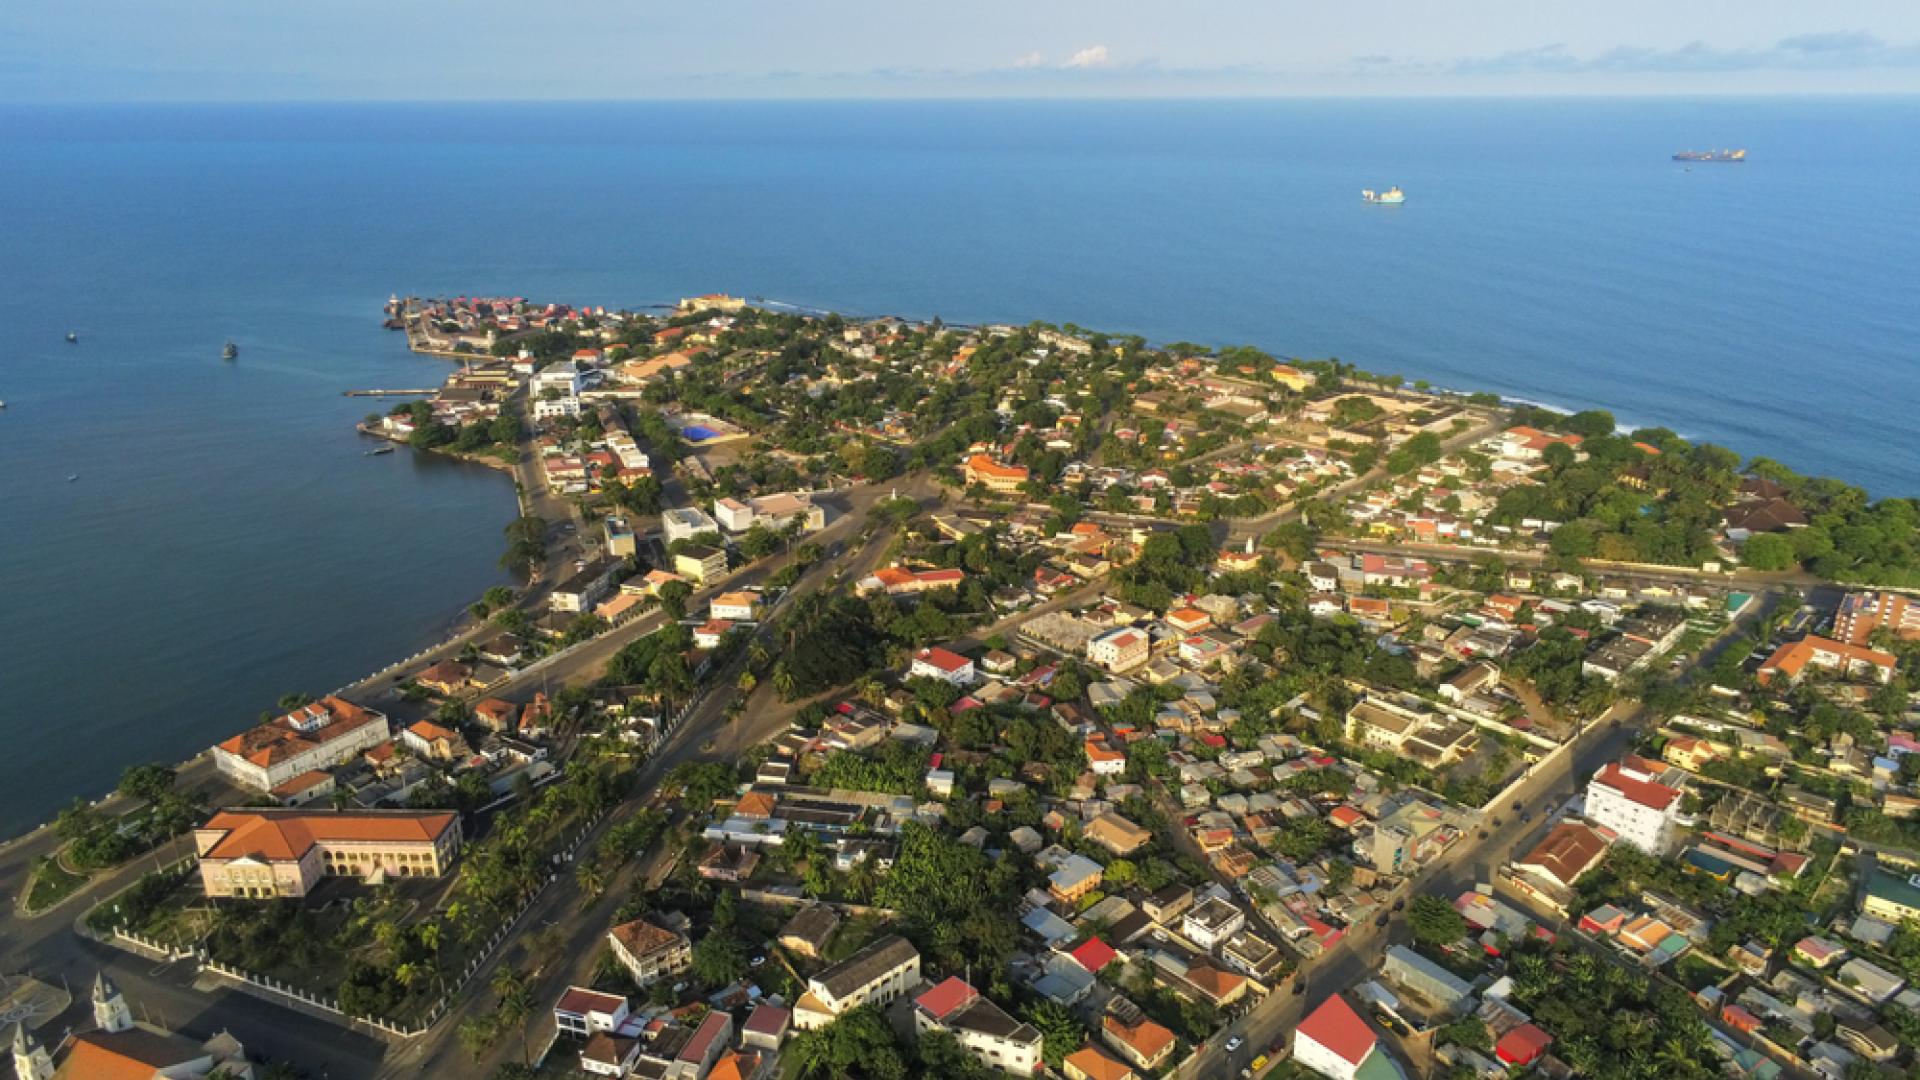 São Tomé, São Tomé and Príncipe